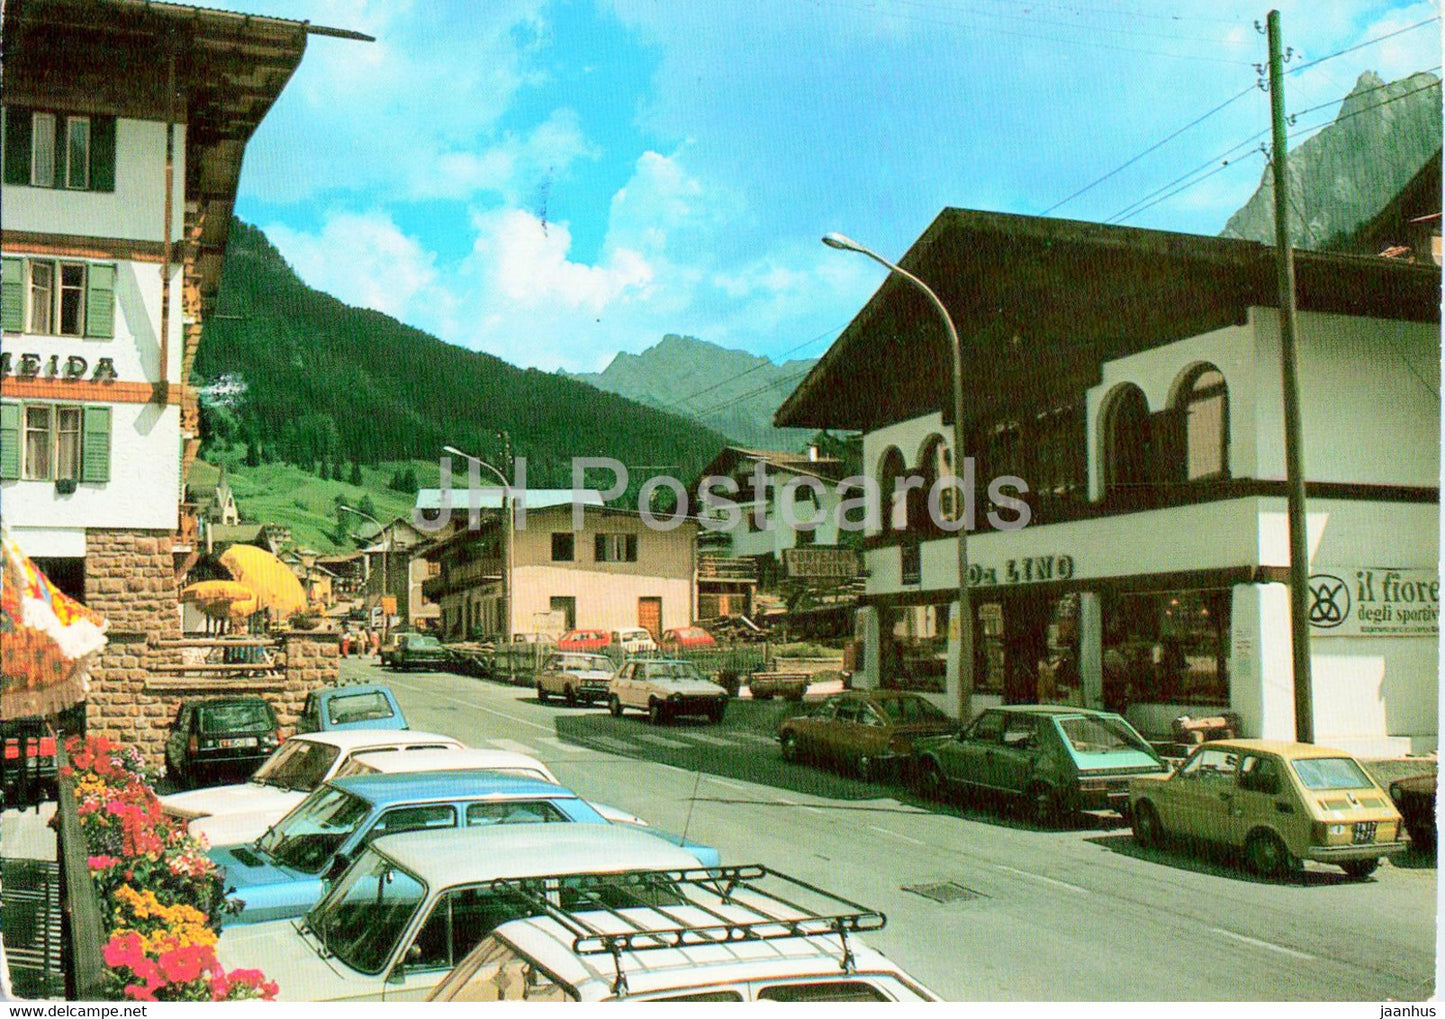 Pozza - Val di Fassa - Dolomiti - car - 1985 - Italy - used - JH Postcards